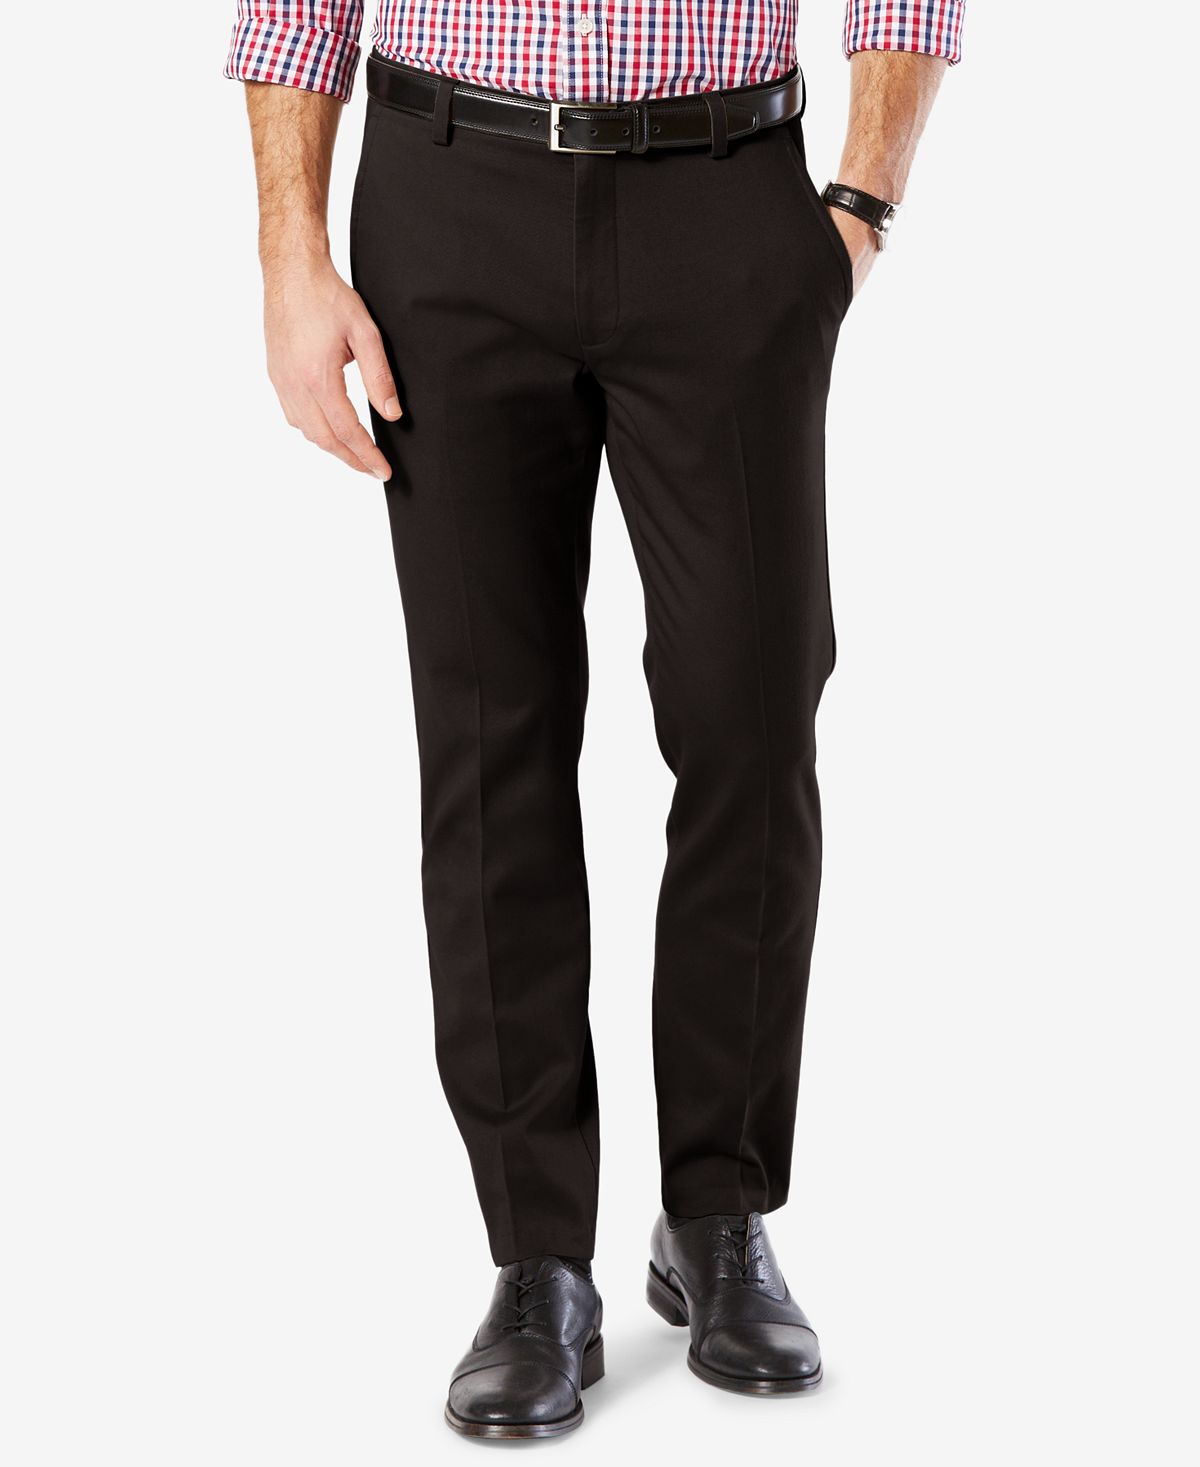 Мужские брюки easy slim fit цвета хаки стрейч Dockers, черный